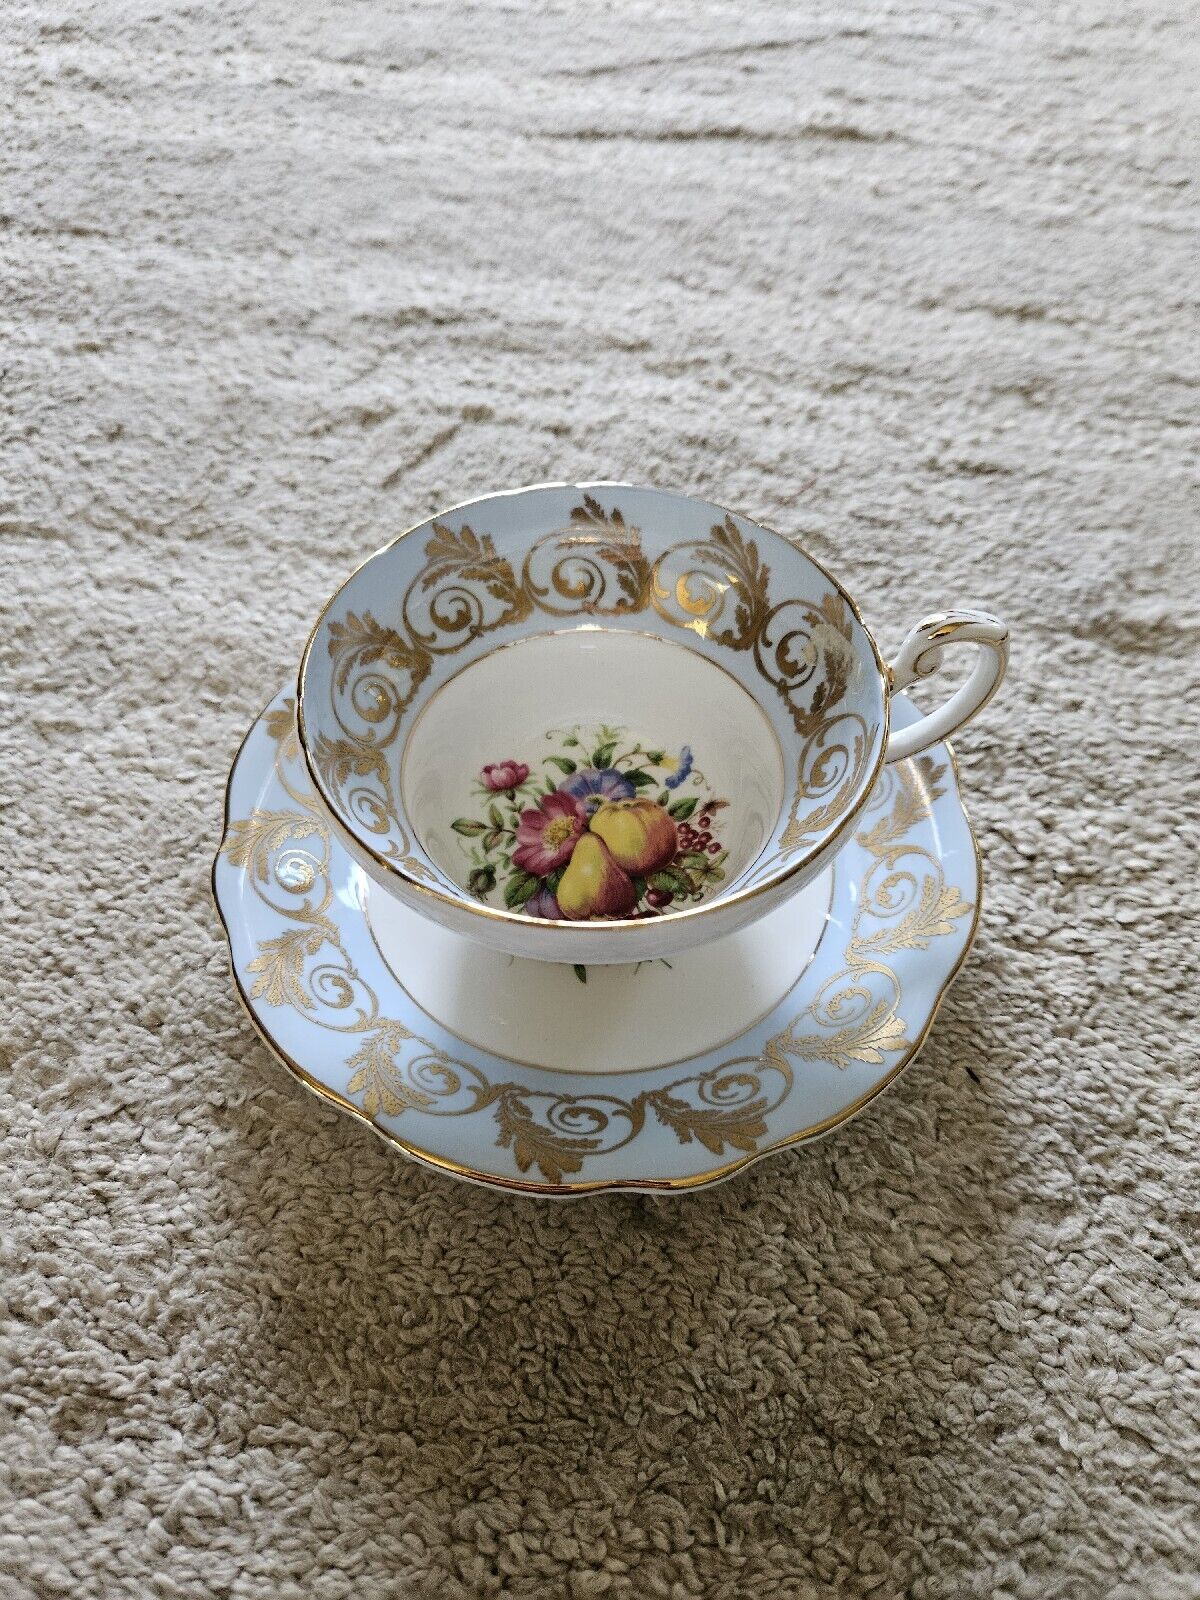 E B Foley Bone China Tea Cup Saucer Light Blue Flowers Fruit Gold Trim